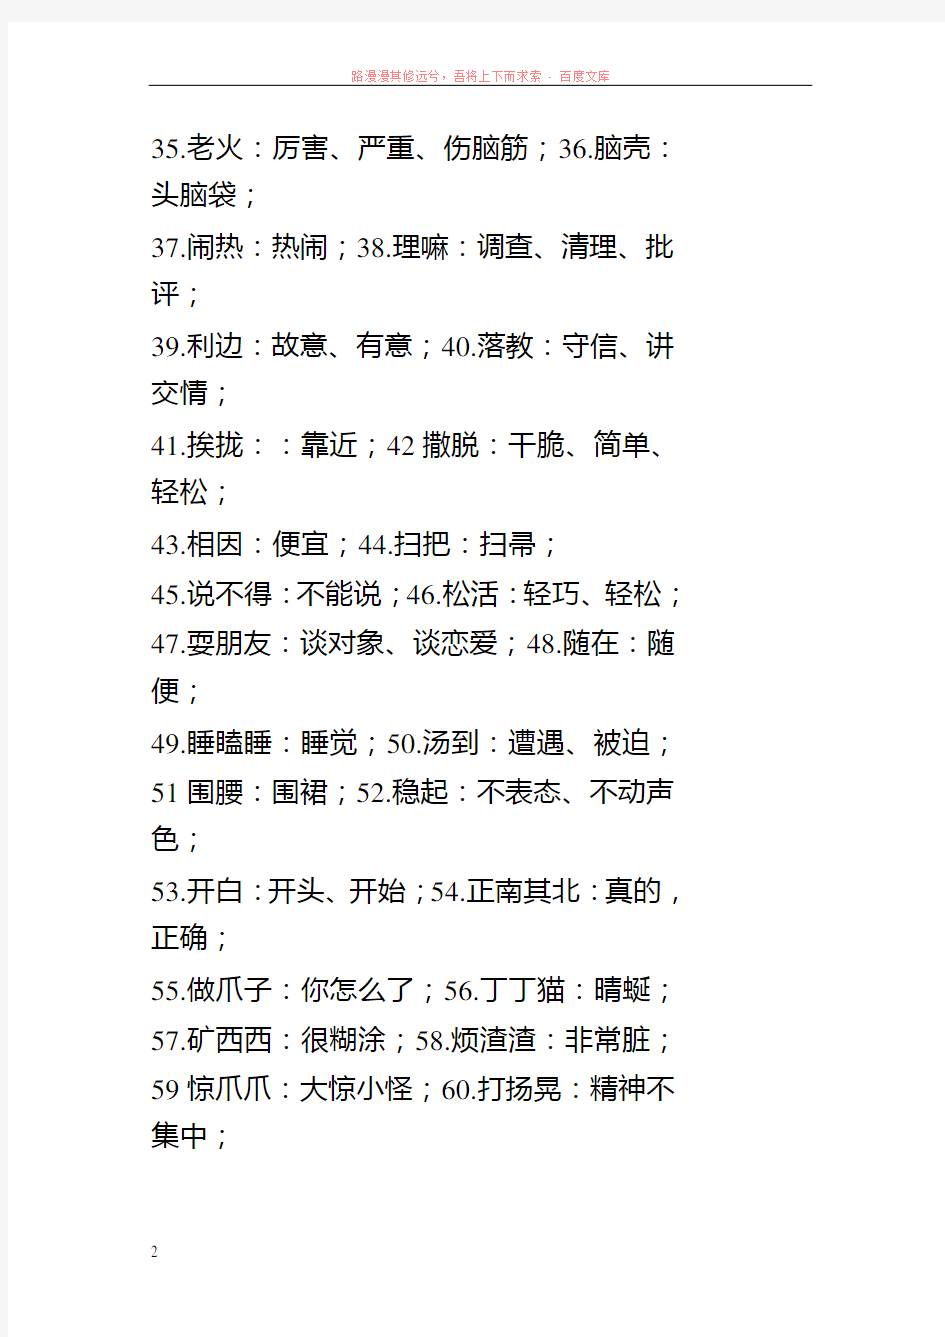 常见重庆方言与普通话对照表 (1)